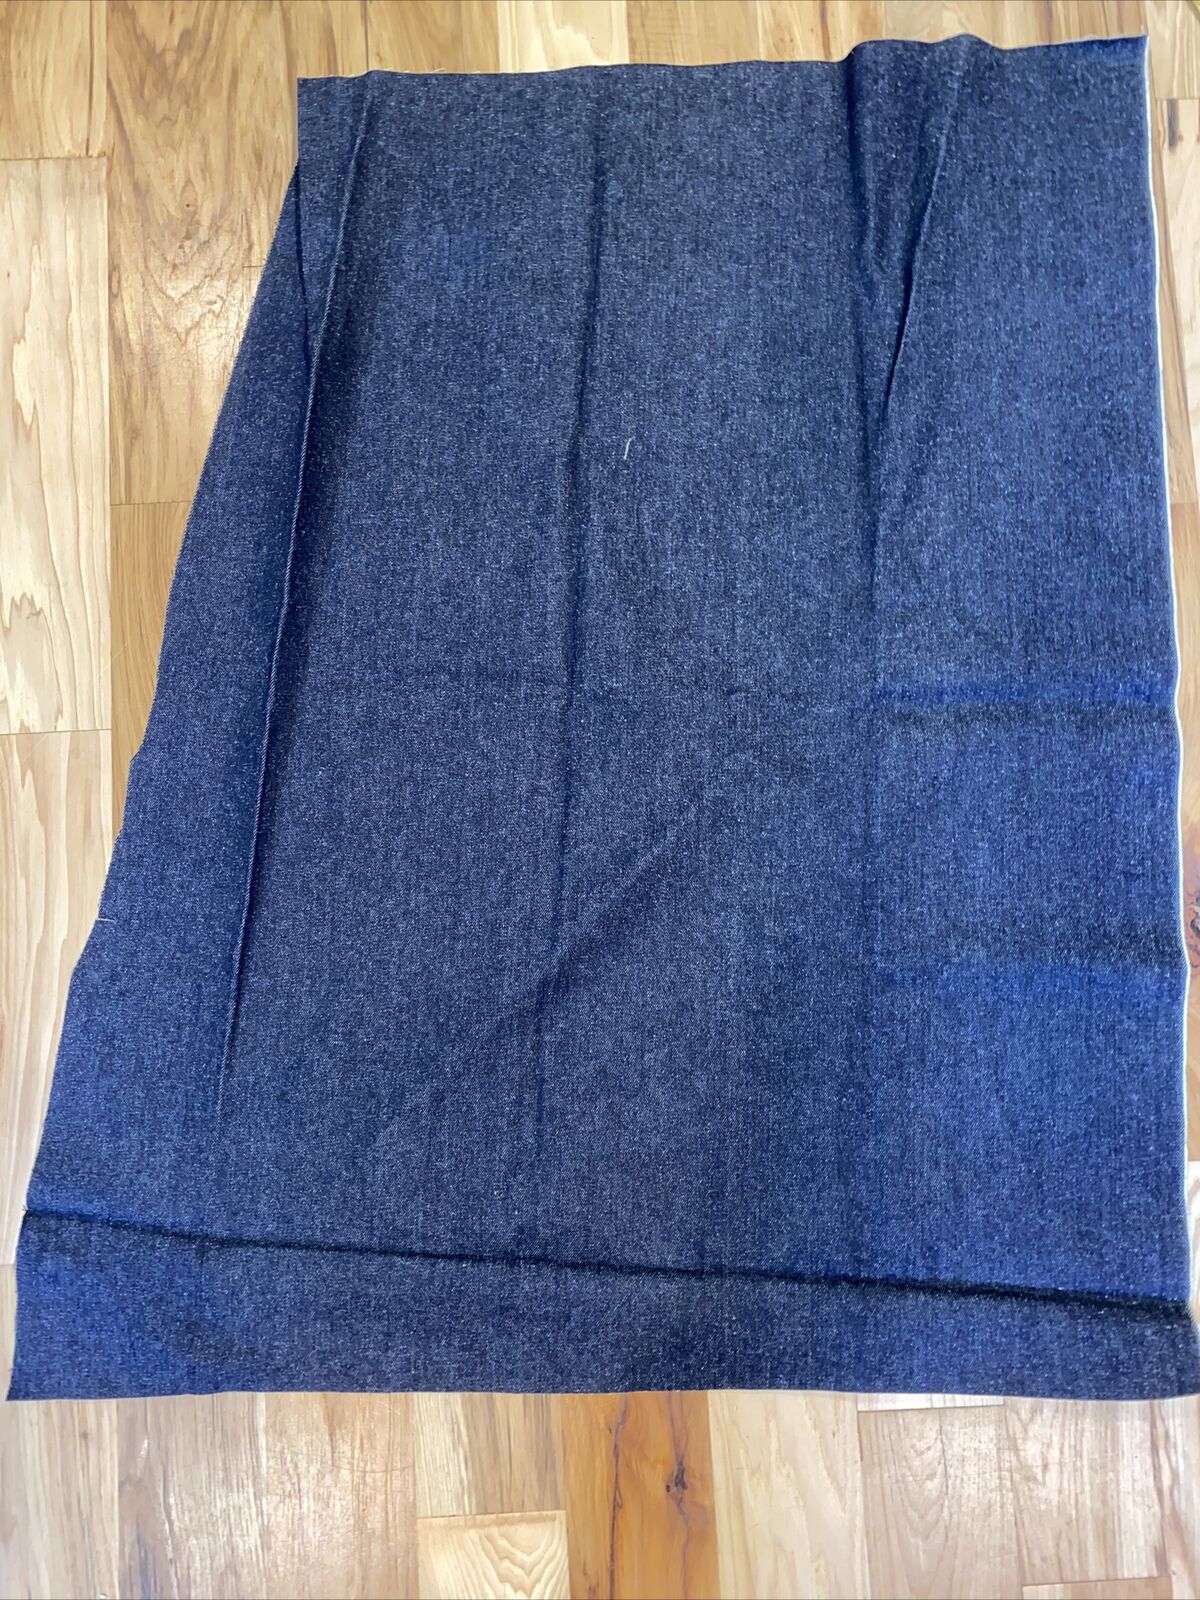 Vintage 1980s Levi’s Denim Fabric Test Sample Unused Dead stock 29”x39” Blue